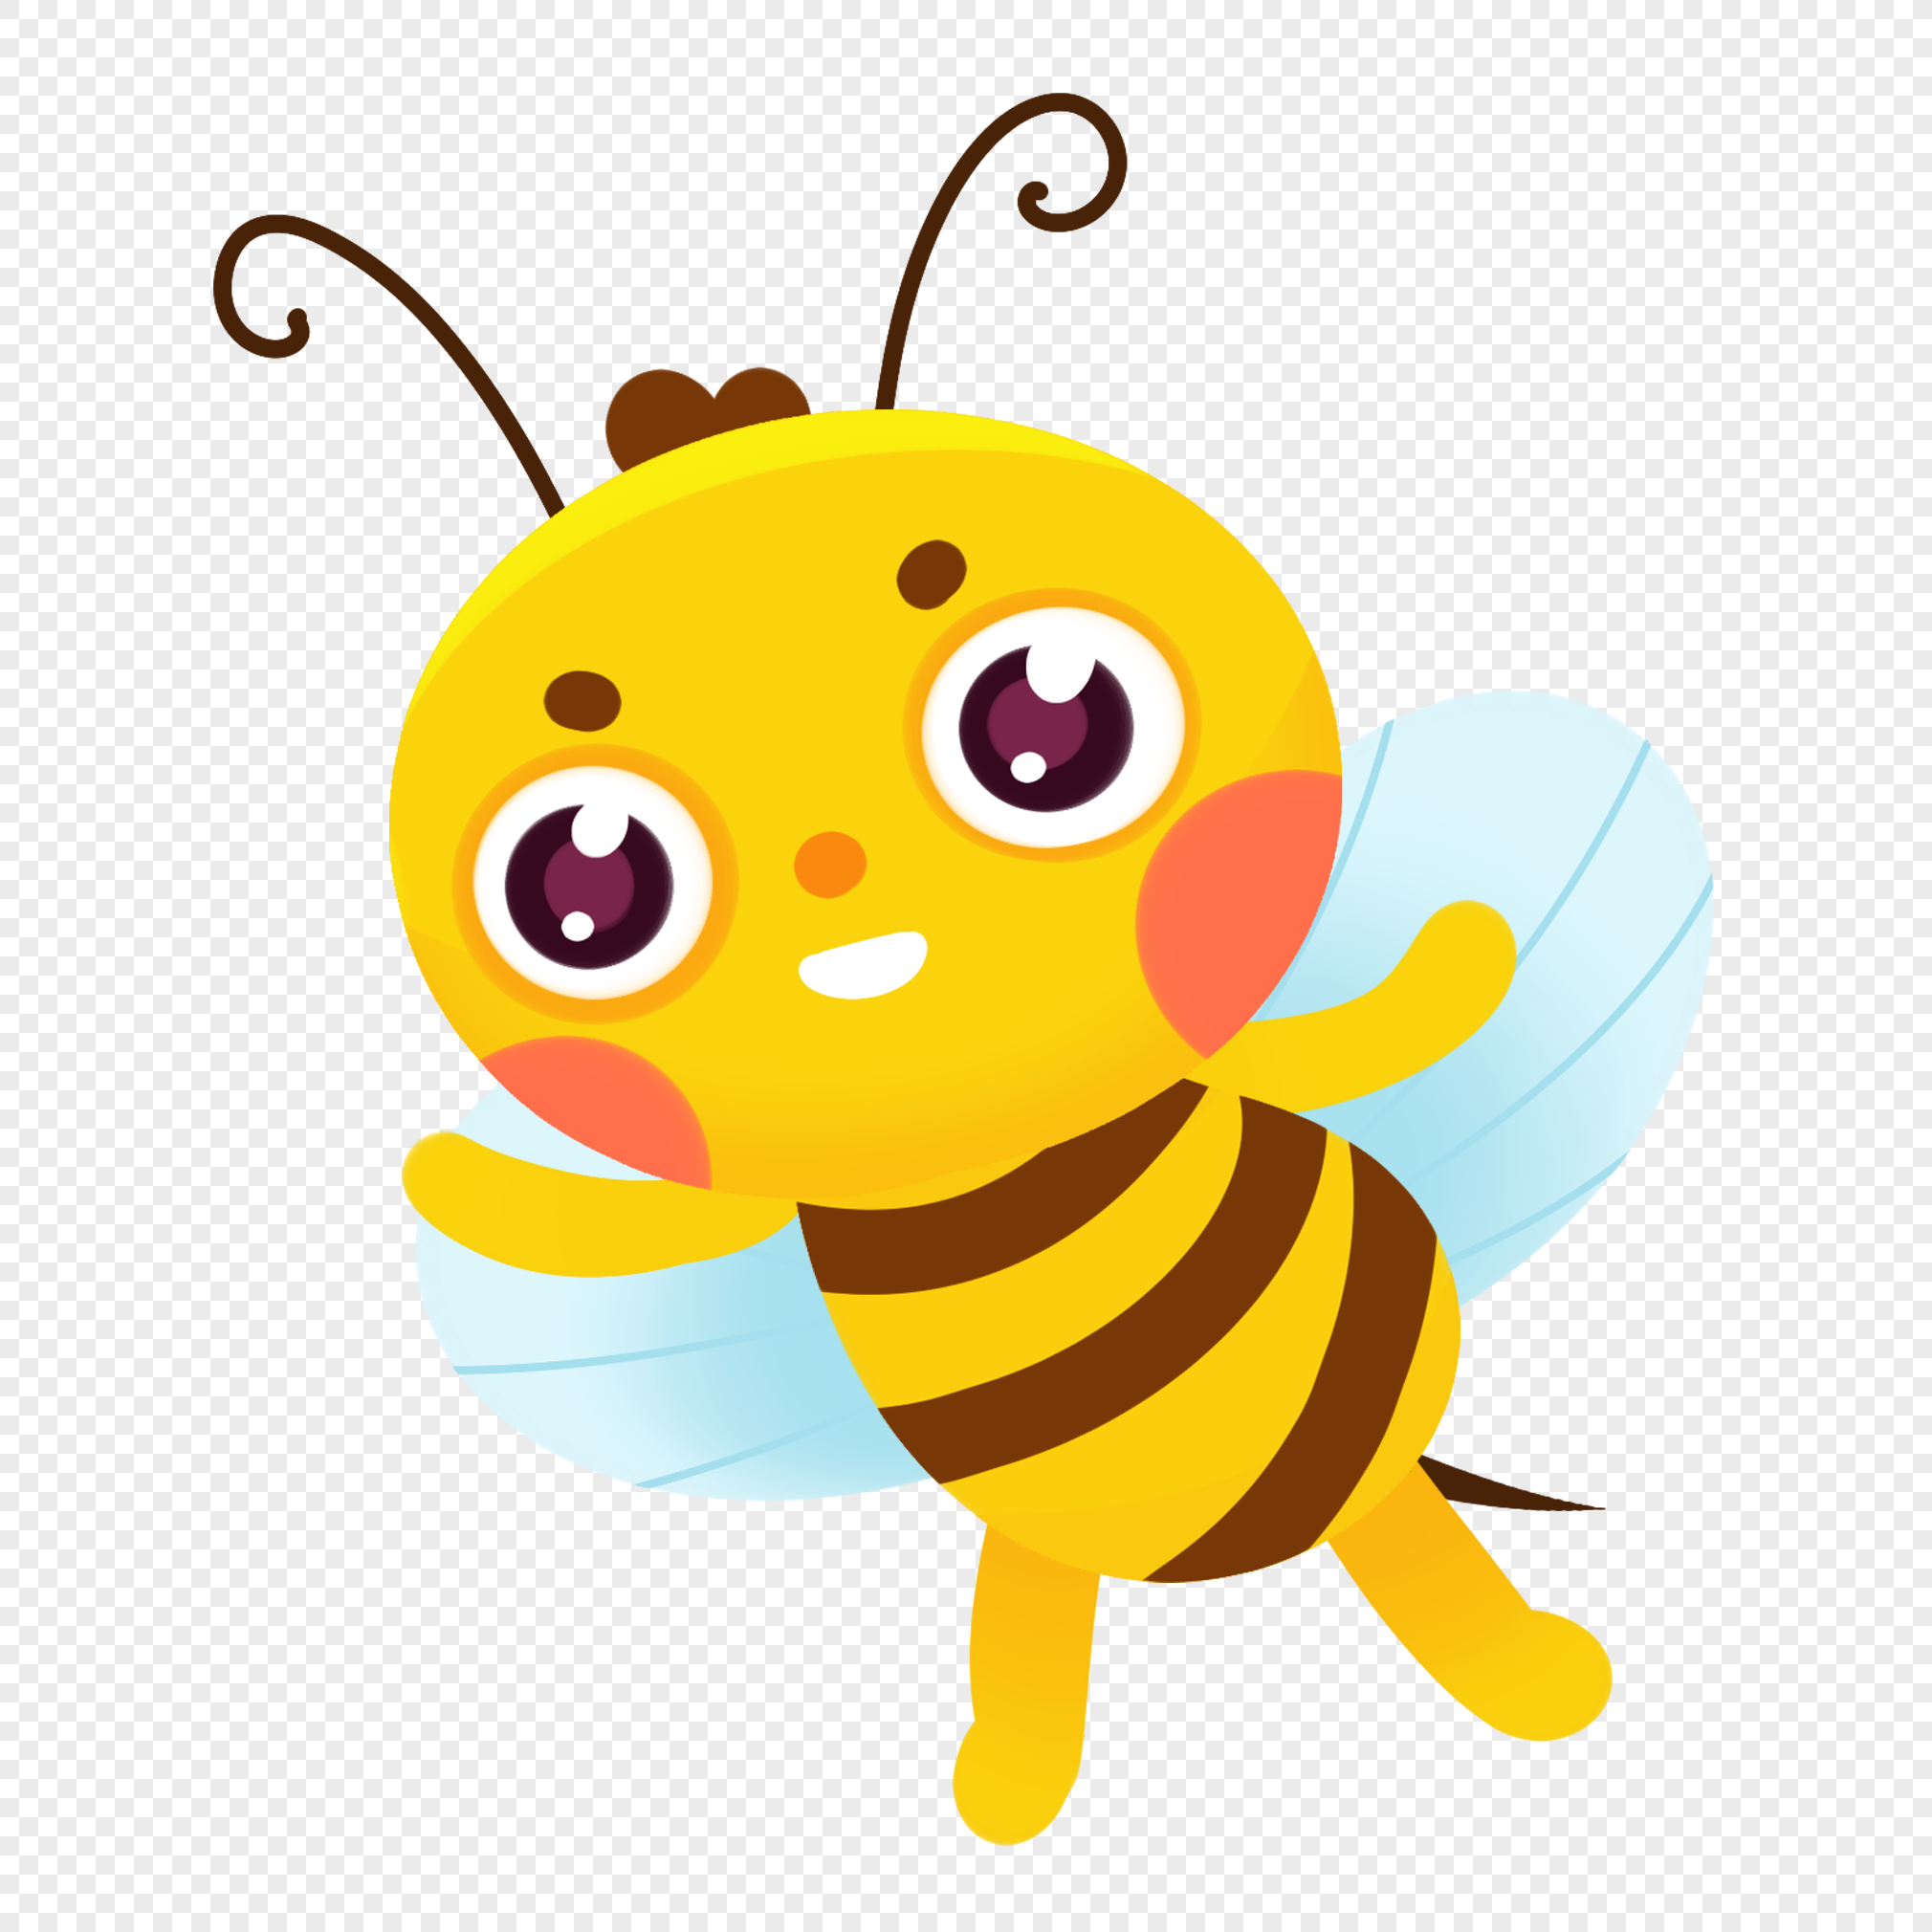 Bộ sưu tập ảnh hoạt hình con ong dễ thương sẽ đưa bạn một nơi tràn ngập niềm vui và hạnh phúc. Đừng bỏ lỡ cơ hội để tận hưởng những hình ảnh động vật đáng yêu nhất trong phim hoạt hình này.